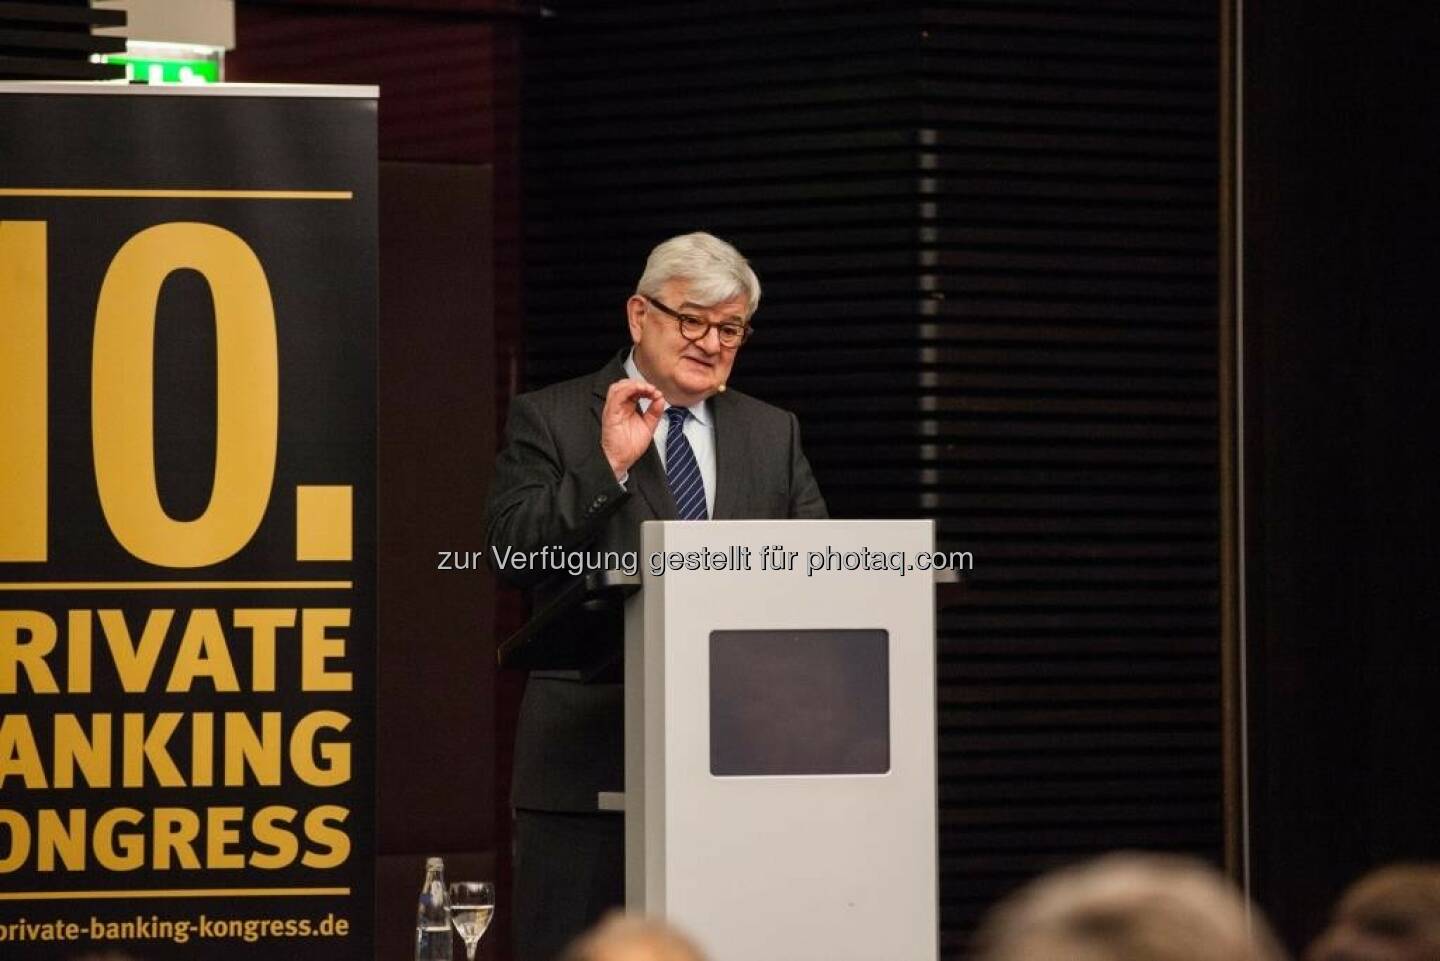 Joschka Fischer auf dem 10. private banking kongress in München : „Europa ist unser Schicksal“ : Fotocredit: Christian Scholtysik/Patrick Hipp